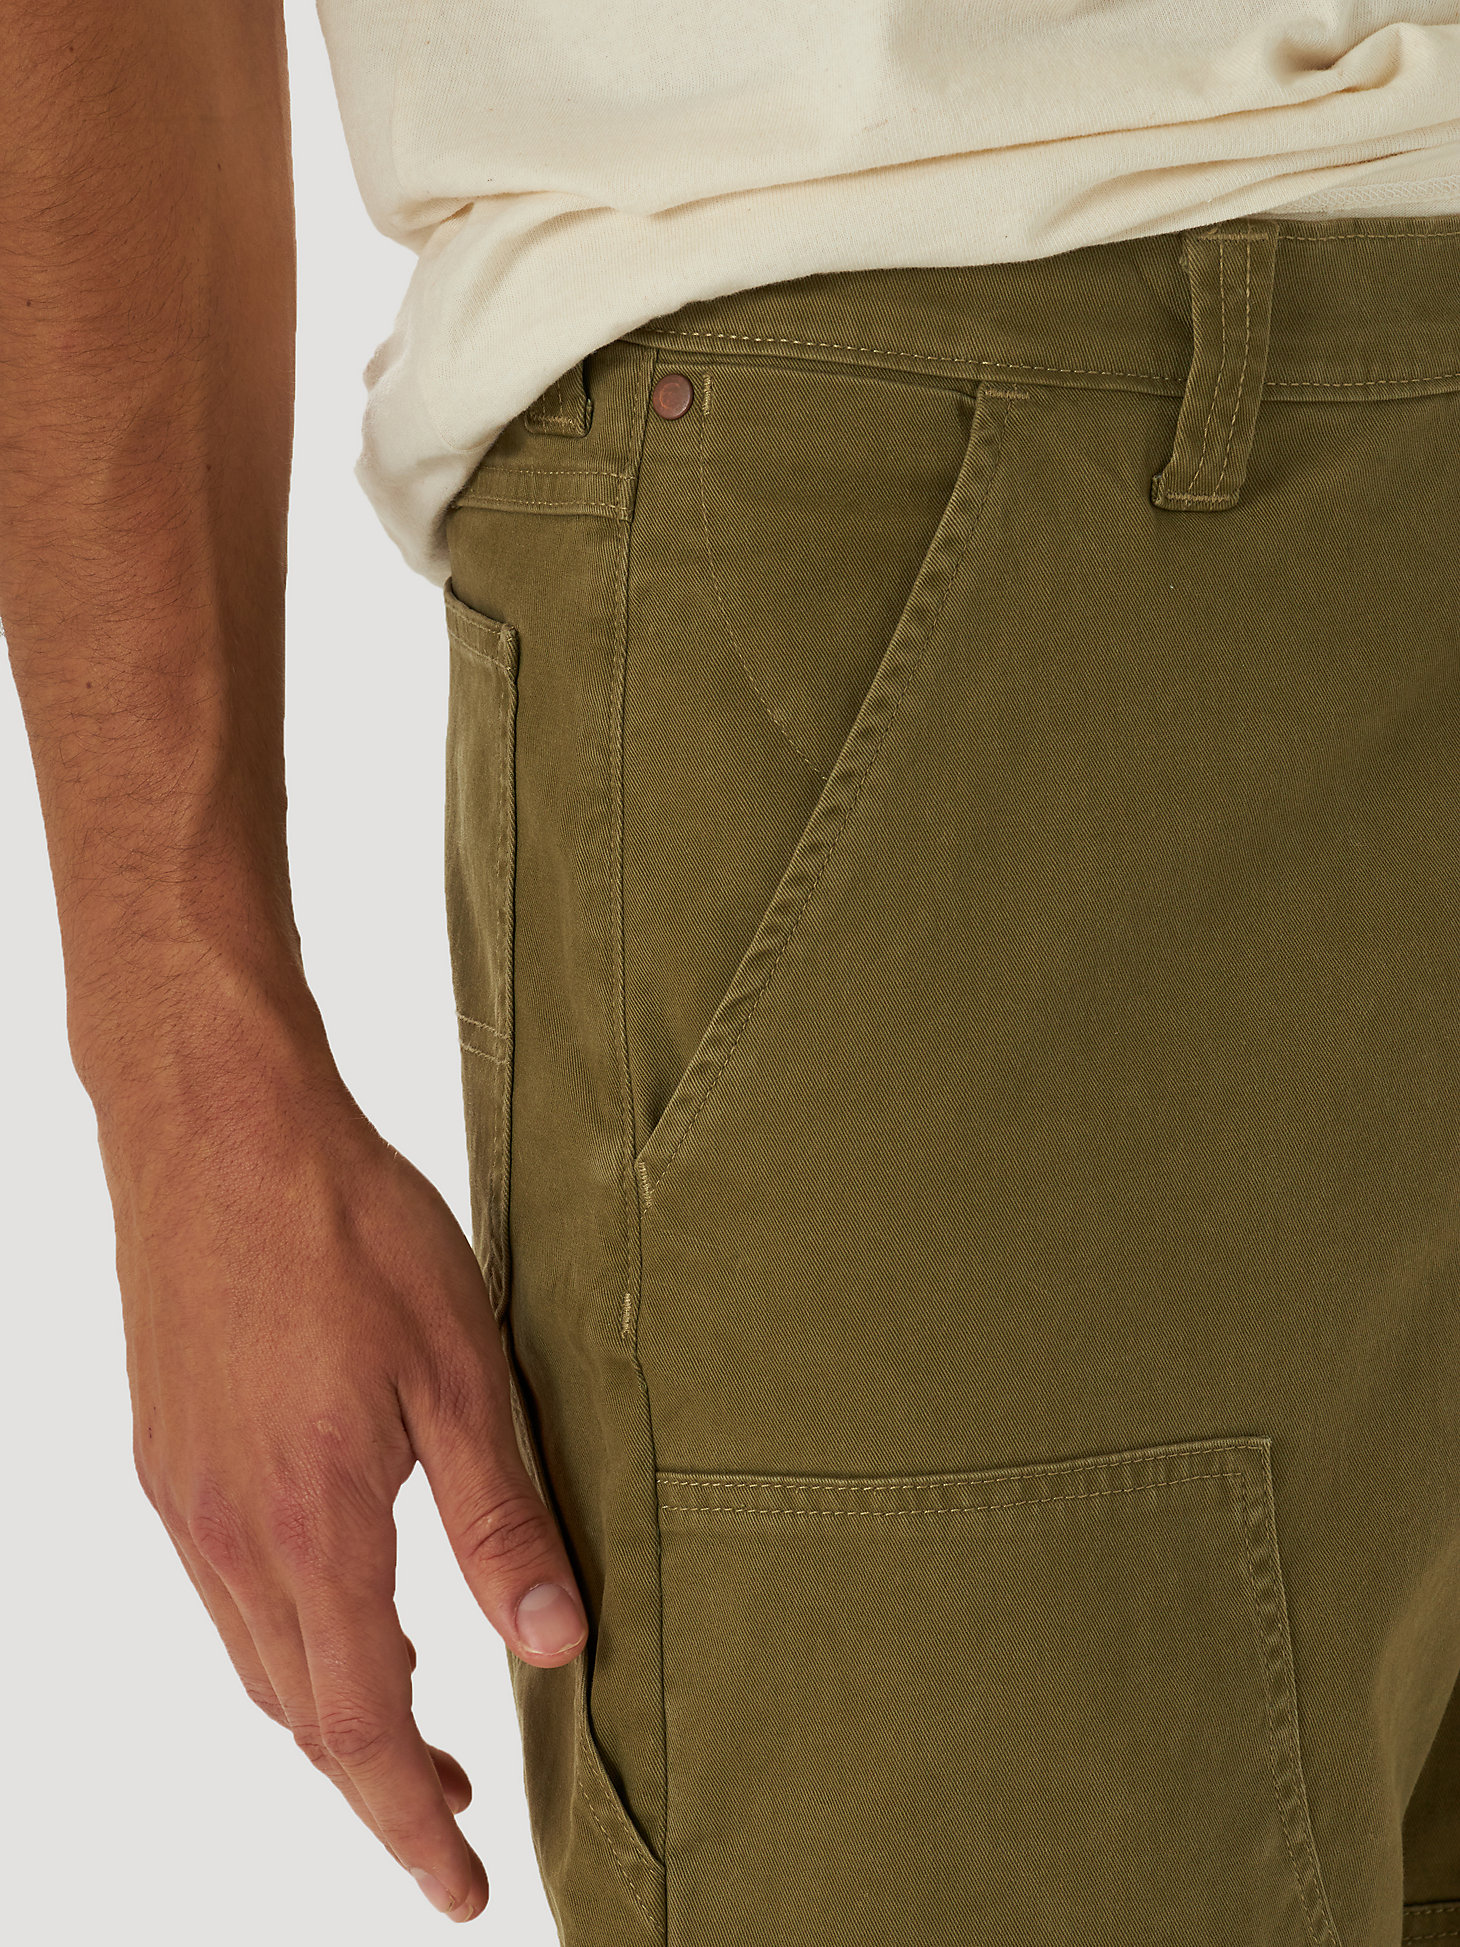 Men's Wrangler® Casey Jones Utility Pant in Lone Tree Green alternative view 5